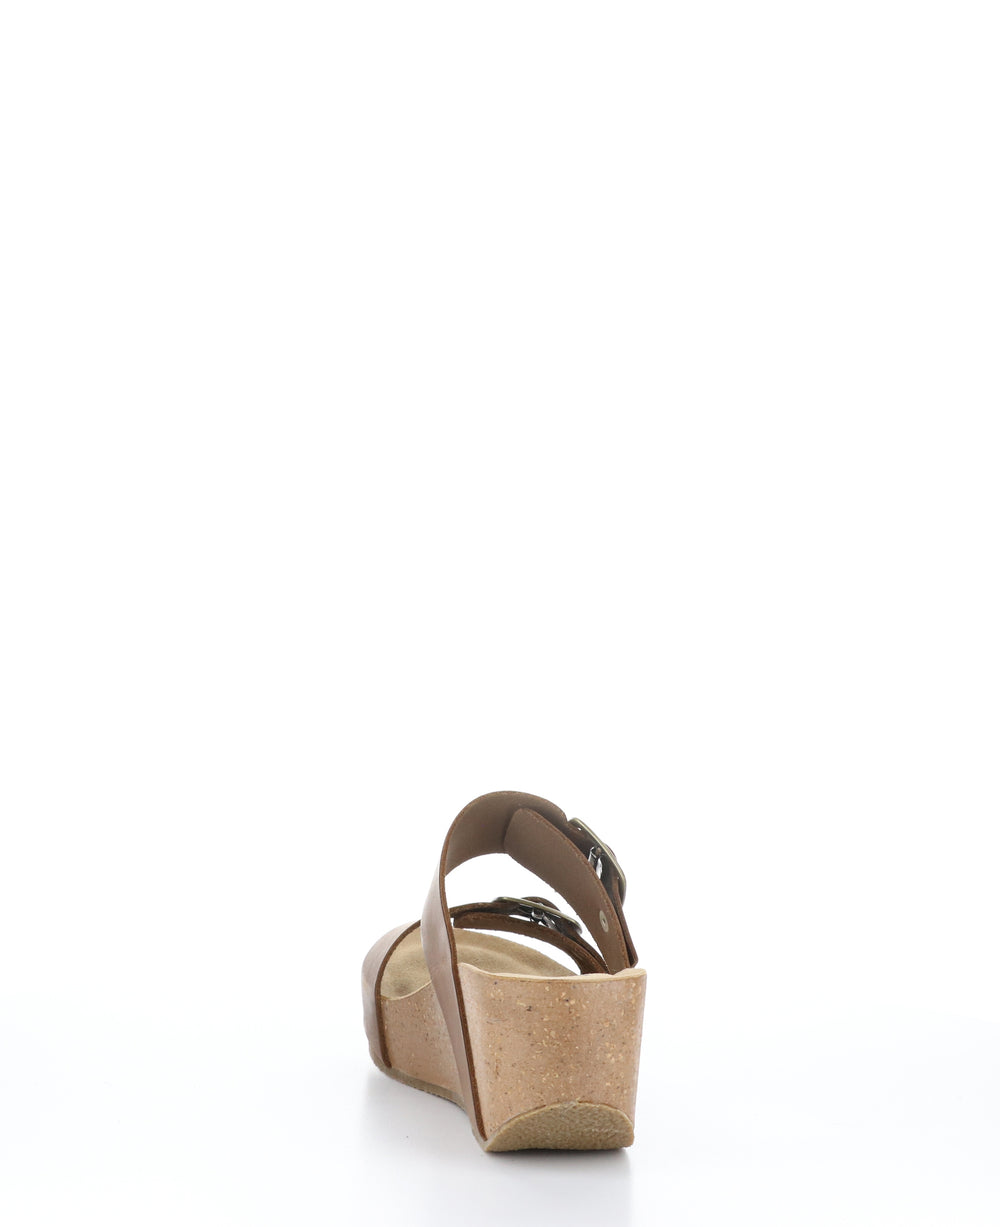 LAWT BRANDY Wedge Sandals|LAWT Mules Compensées in Marron